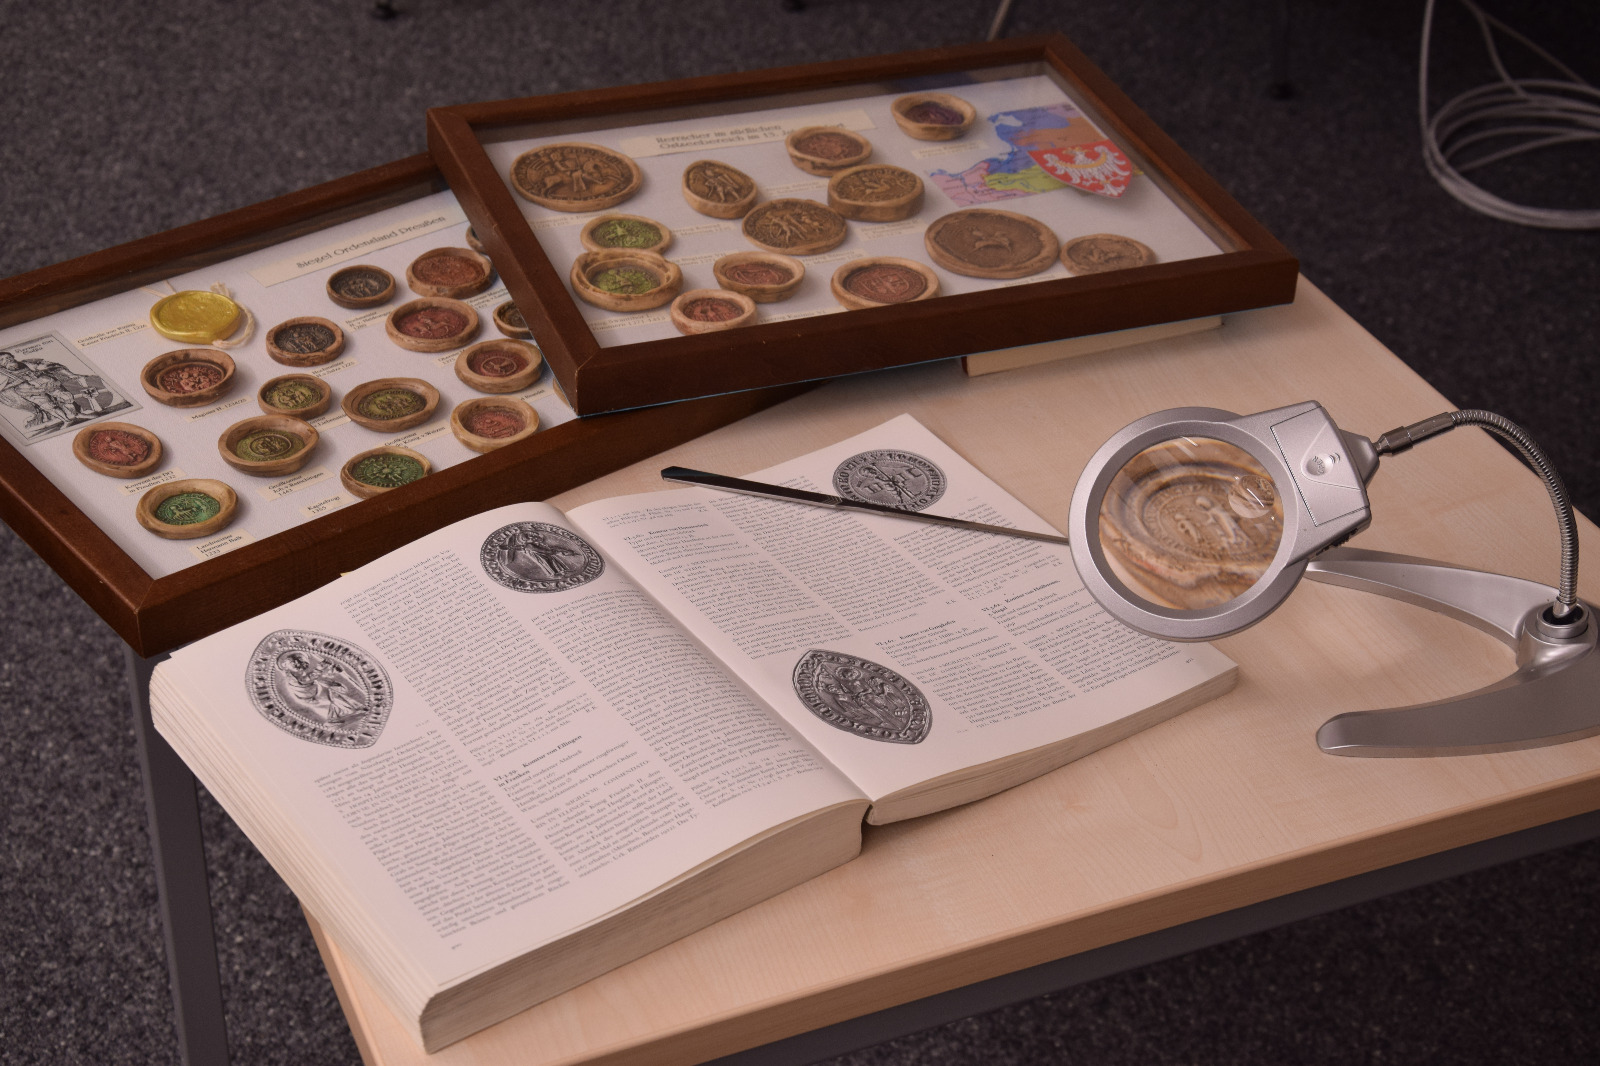 Auf dem Bild sieht man auf einem Tisch ausgebreitet ein Buch über Siegel und am oberen Ende des Tisches zwei Schaukästen, in denen sich verschiedene Siegel befinden.